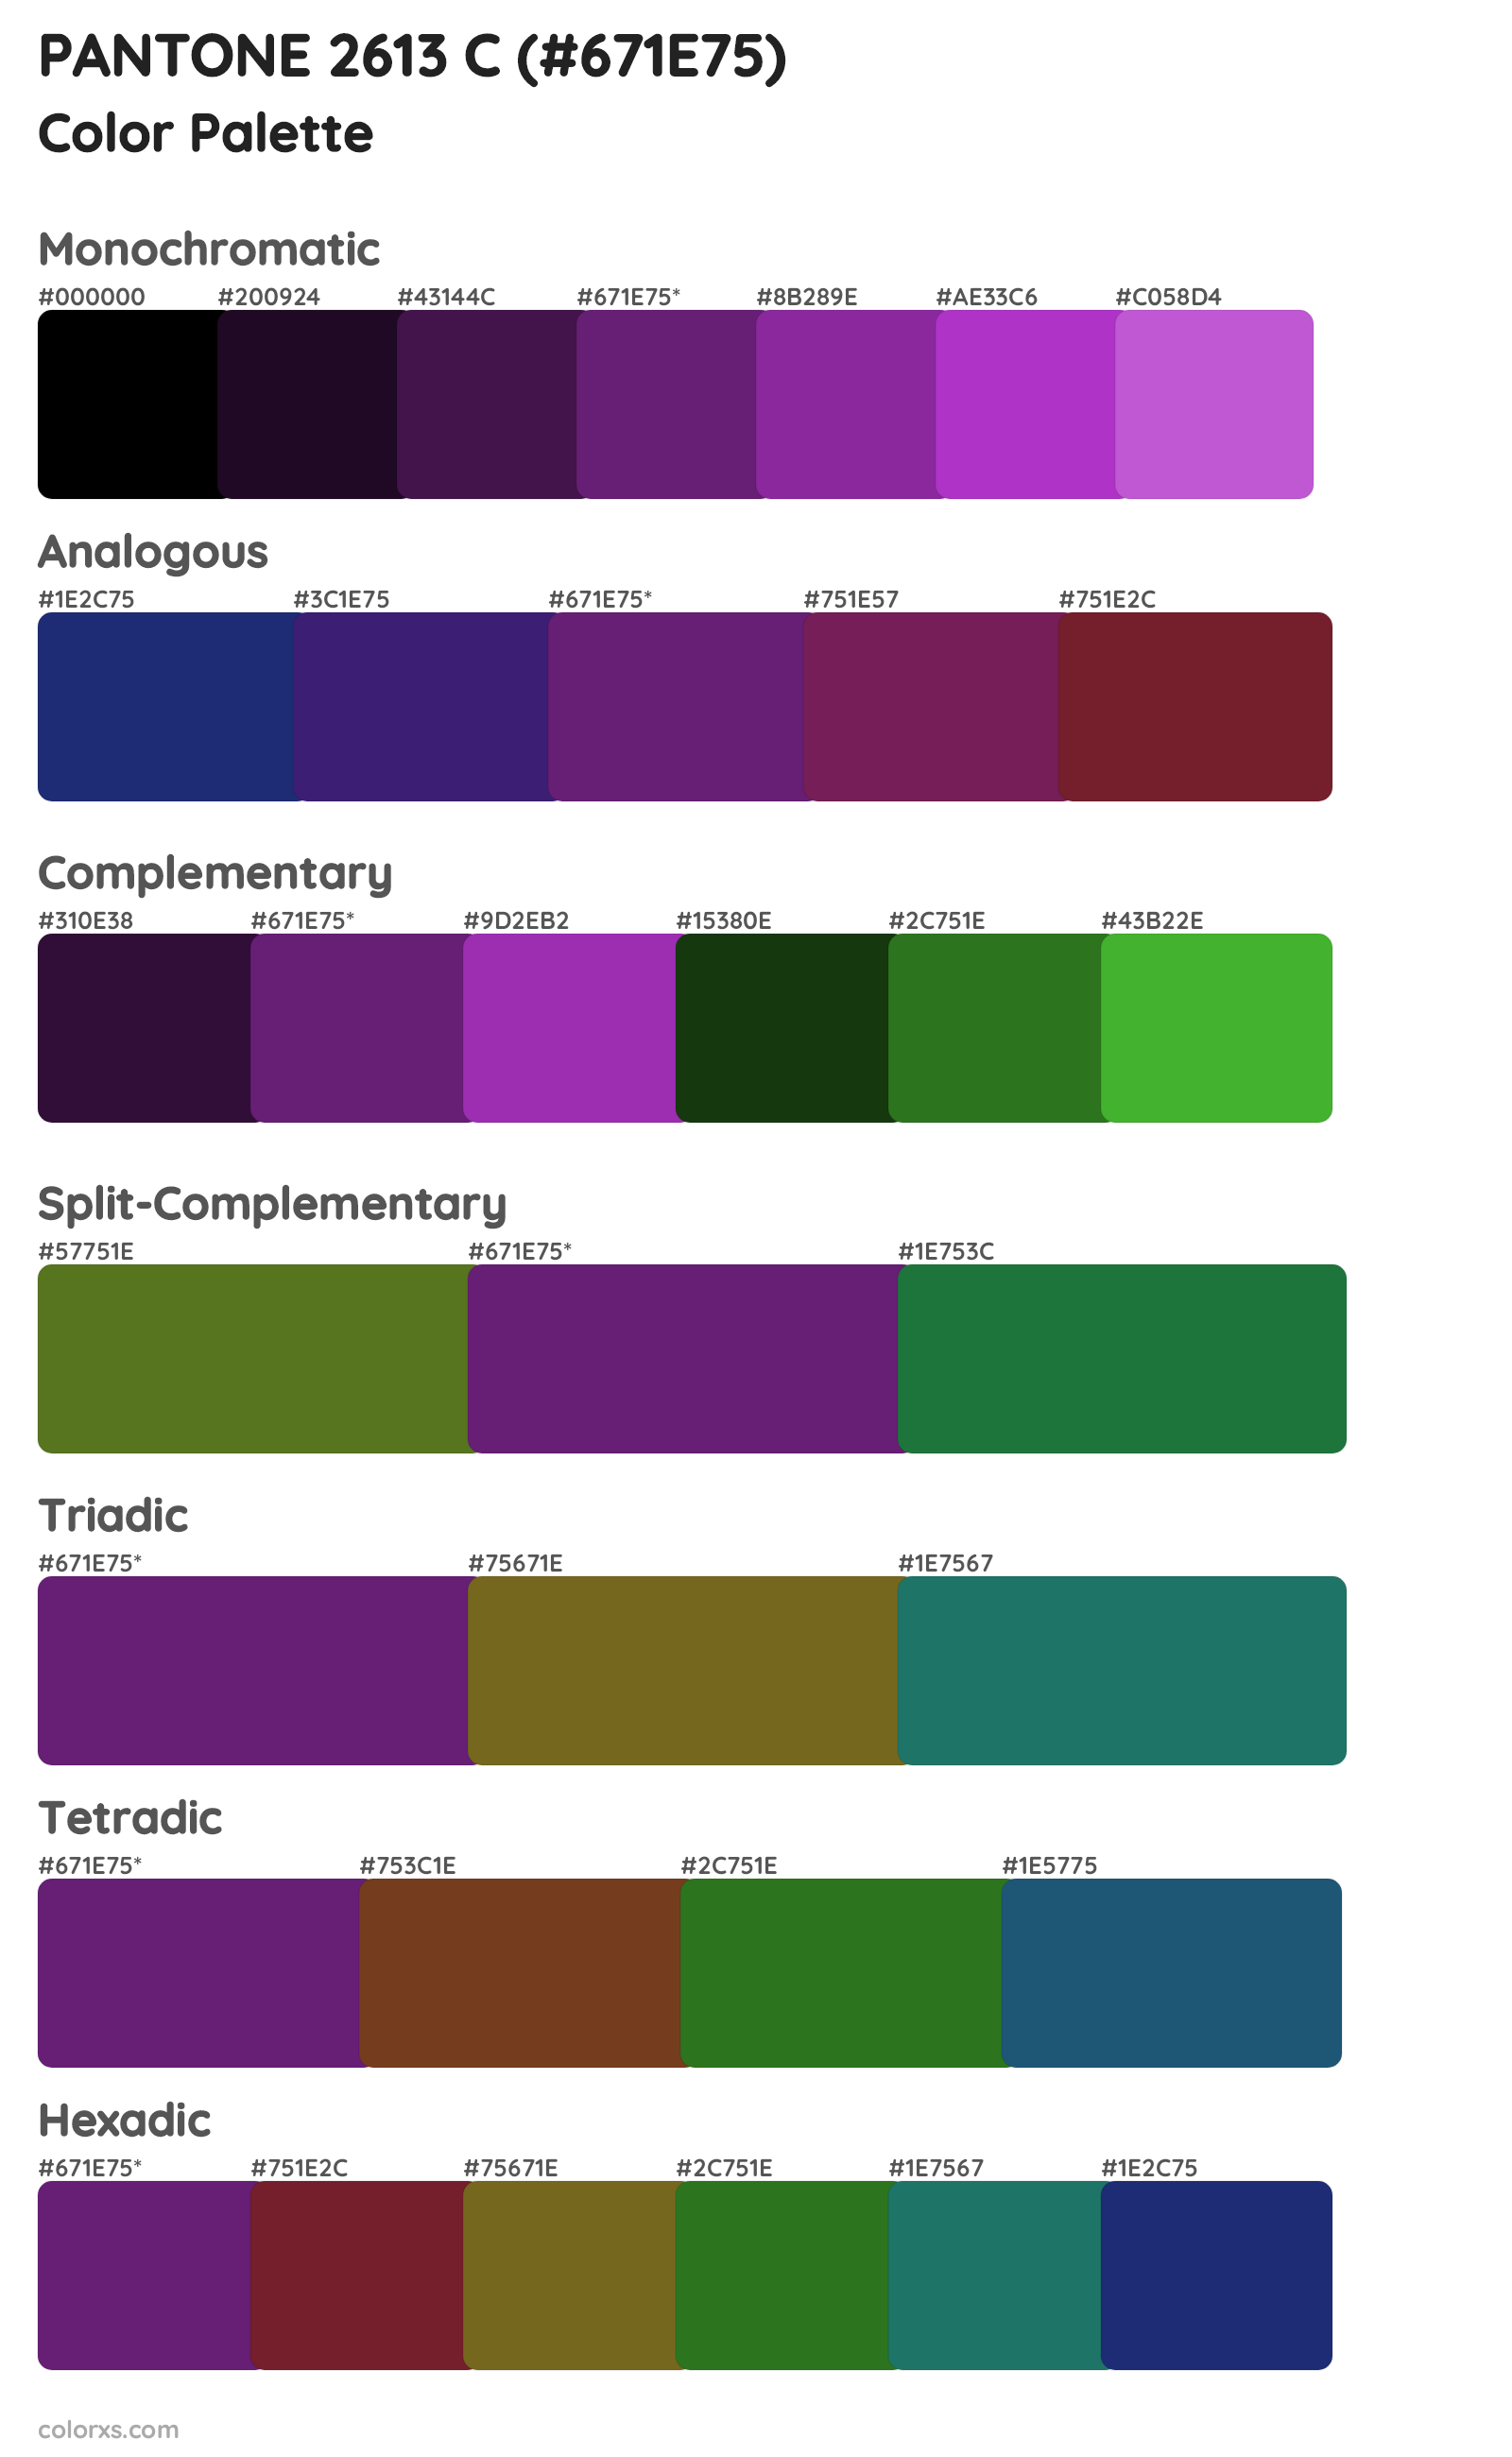 PANTONE 2613 C Color Scheme Palettes